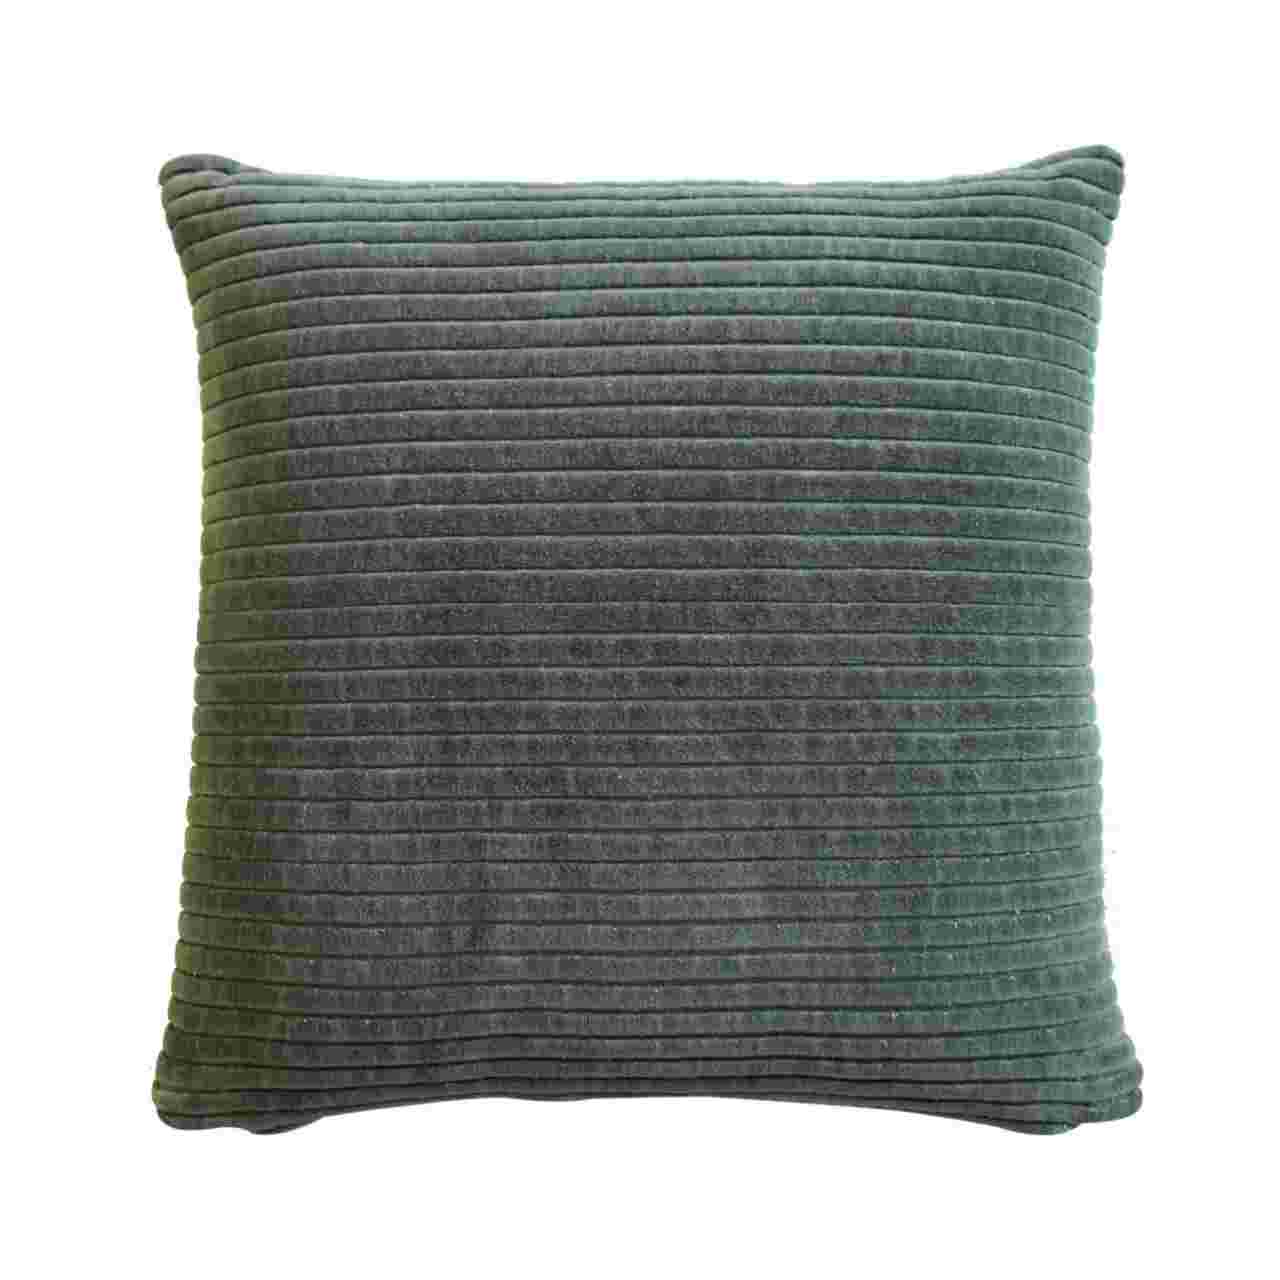 ribbed green cushion set of 2